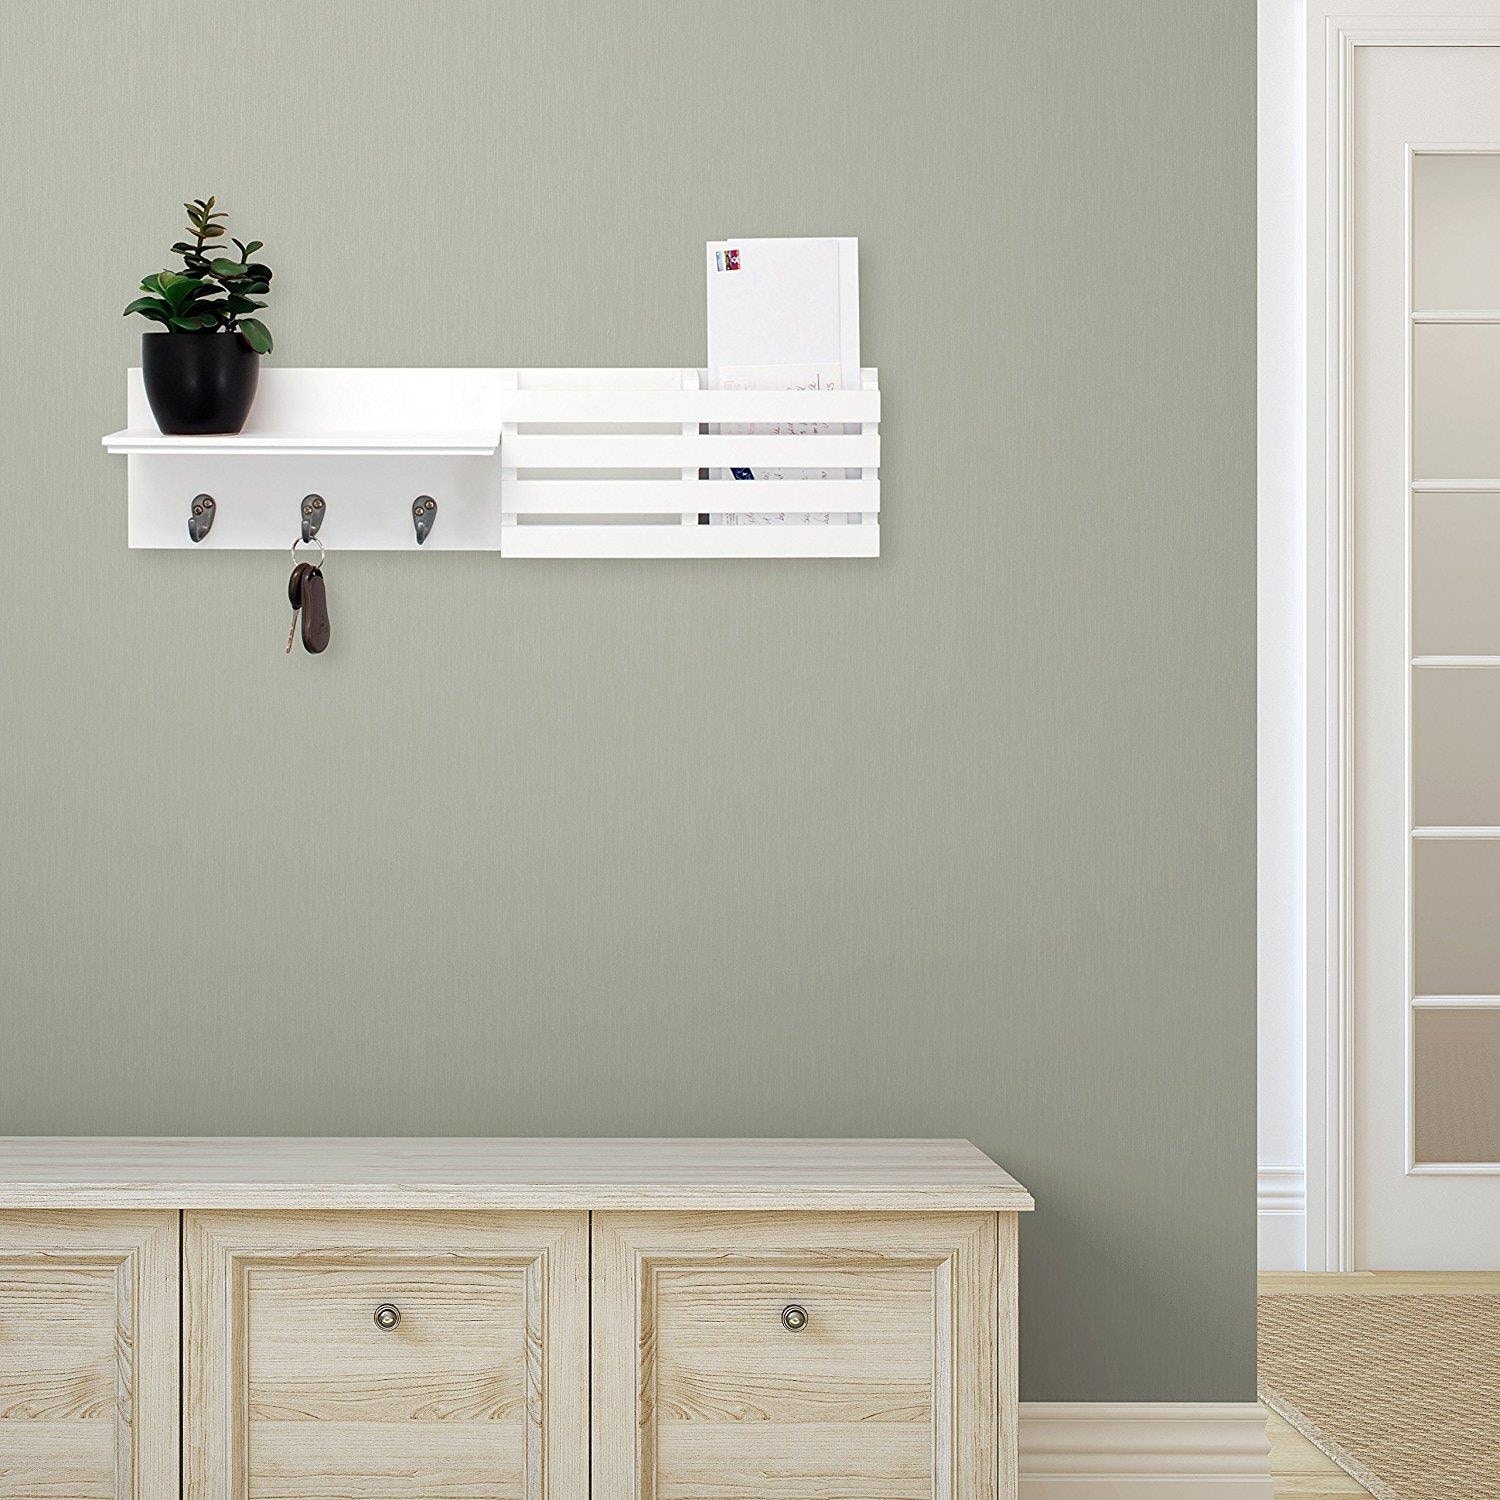 24" Floating Shelve Wood Wall Shelf Holder Hanging Storage with Hooks 